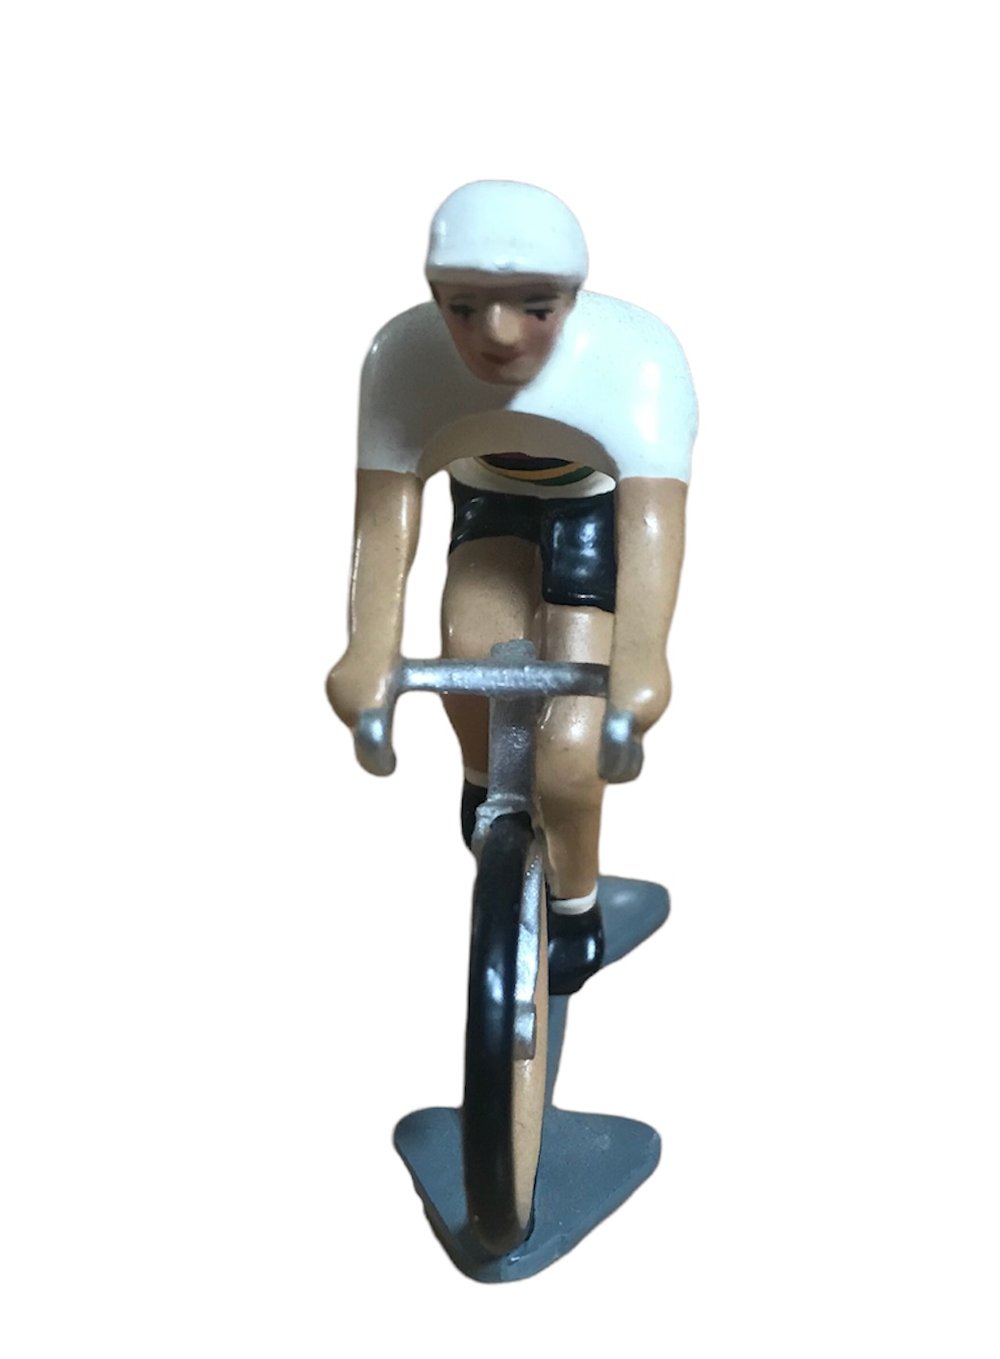 Miniature Tour de France cyclists by CBG Mignot